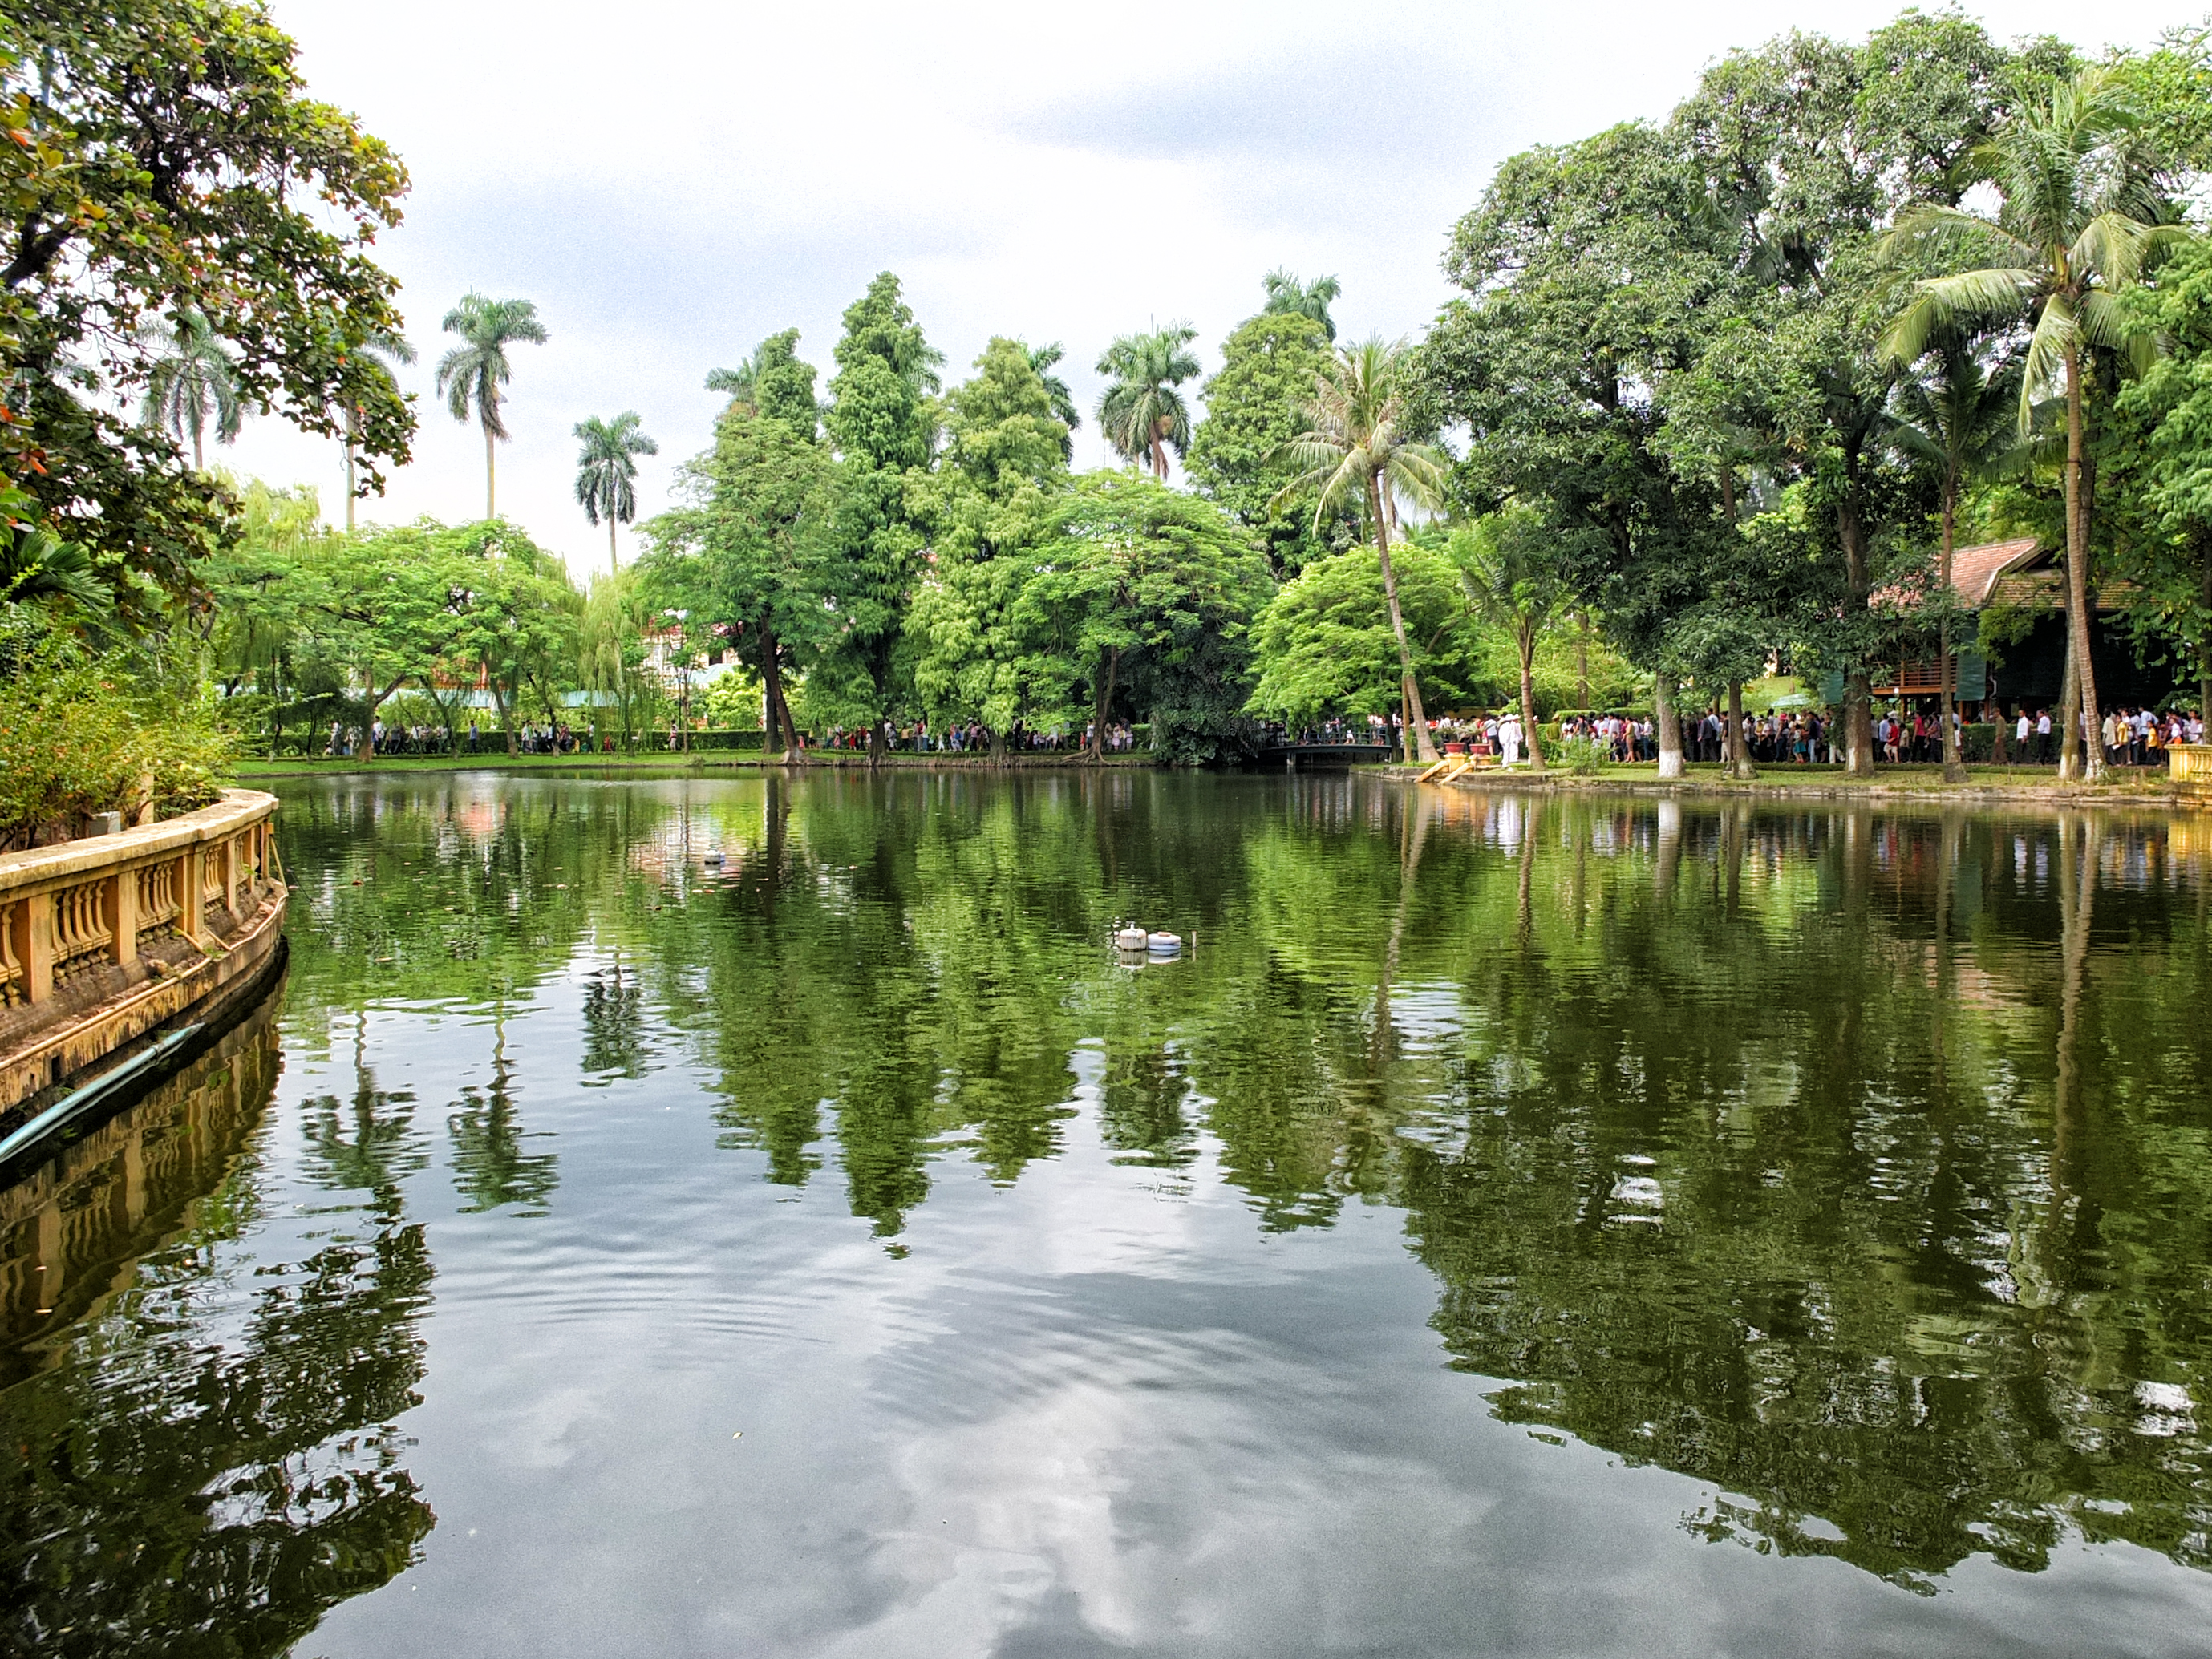 Carp pond near Ho Chi Minh's Stilt House